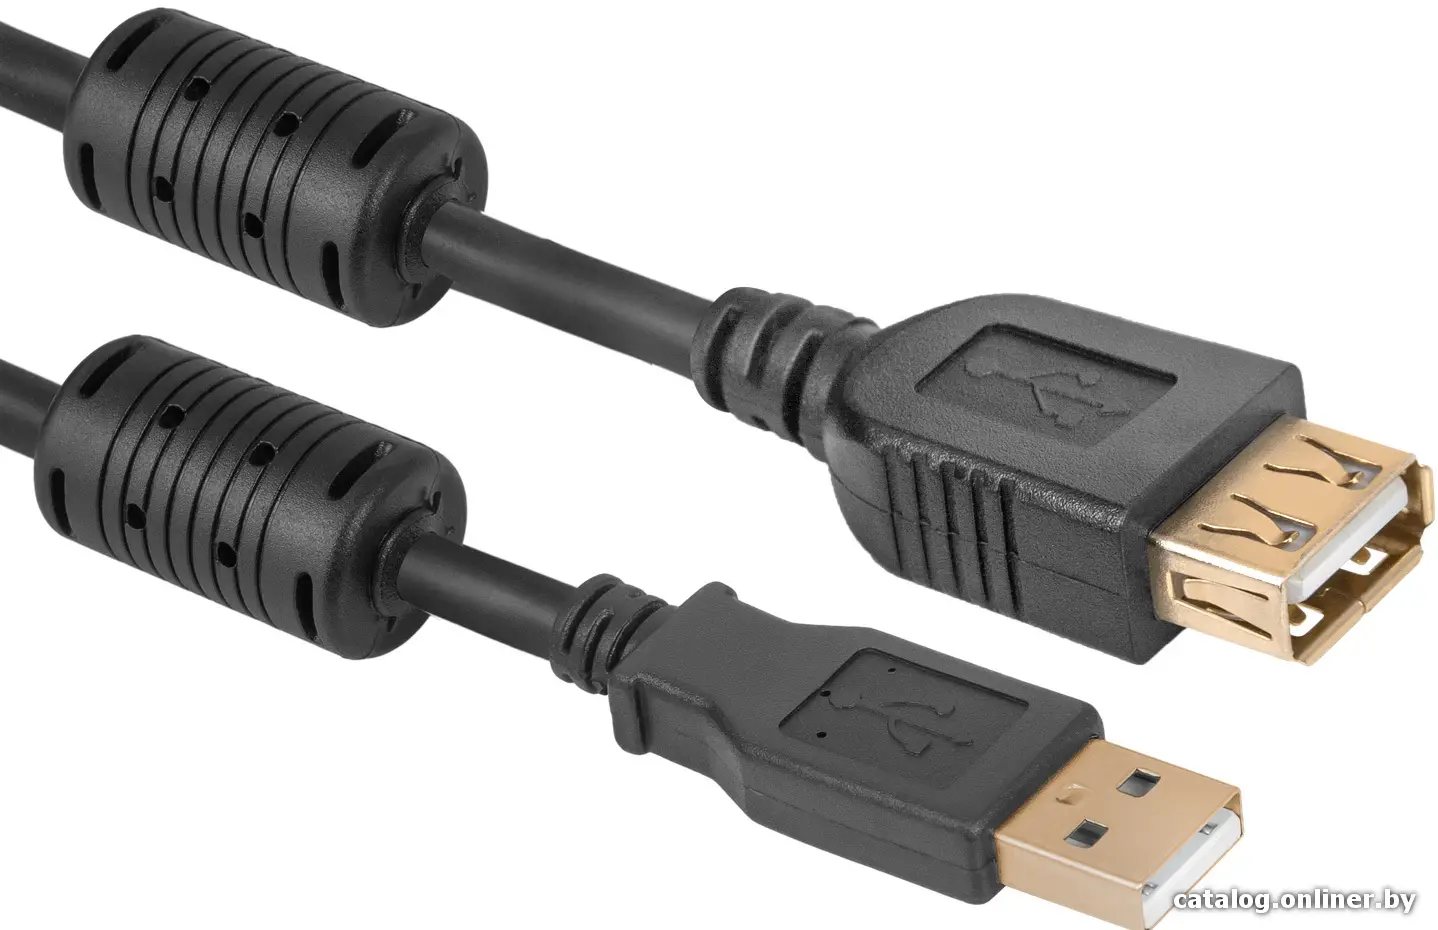 Купить Удлинитель USB 2.0 AM вилка - AF розетка 1,8м Defender USB02-06PRO черный, цена, опт и розница